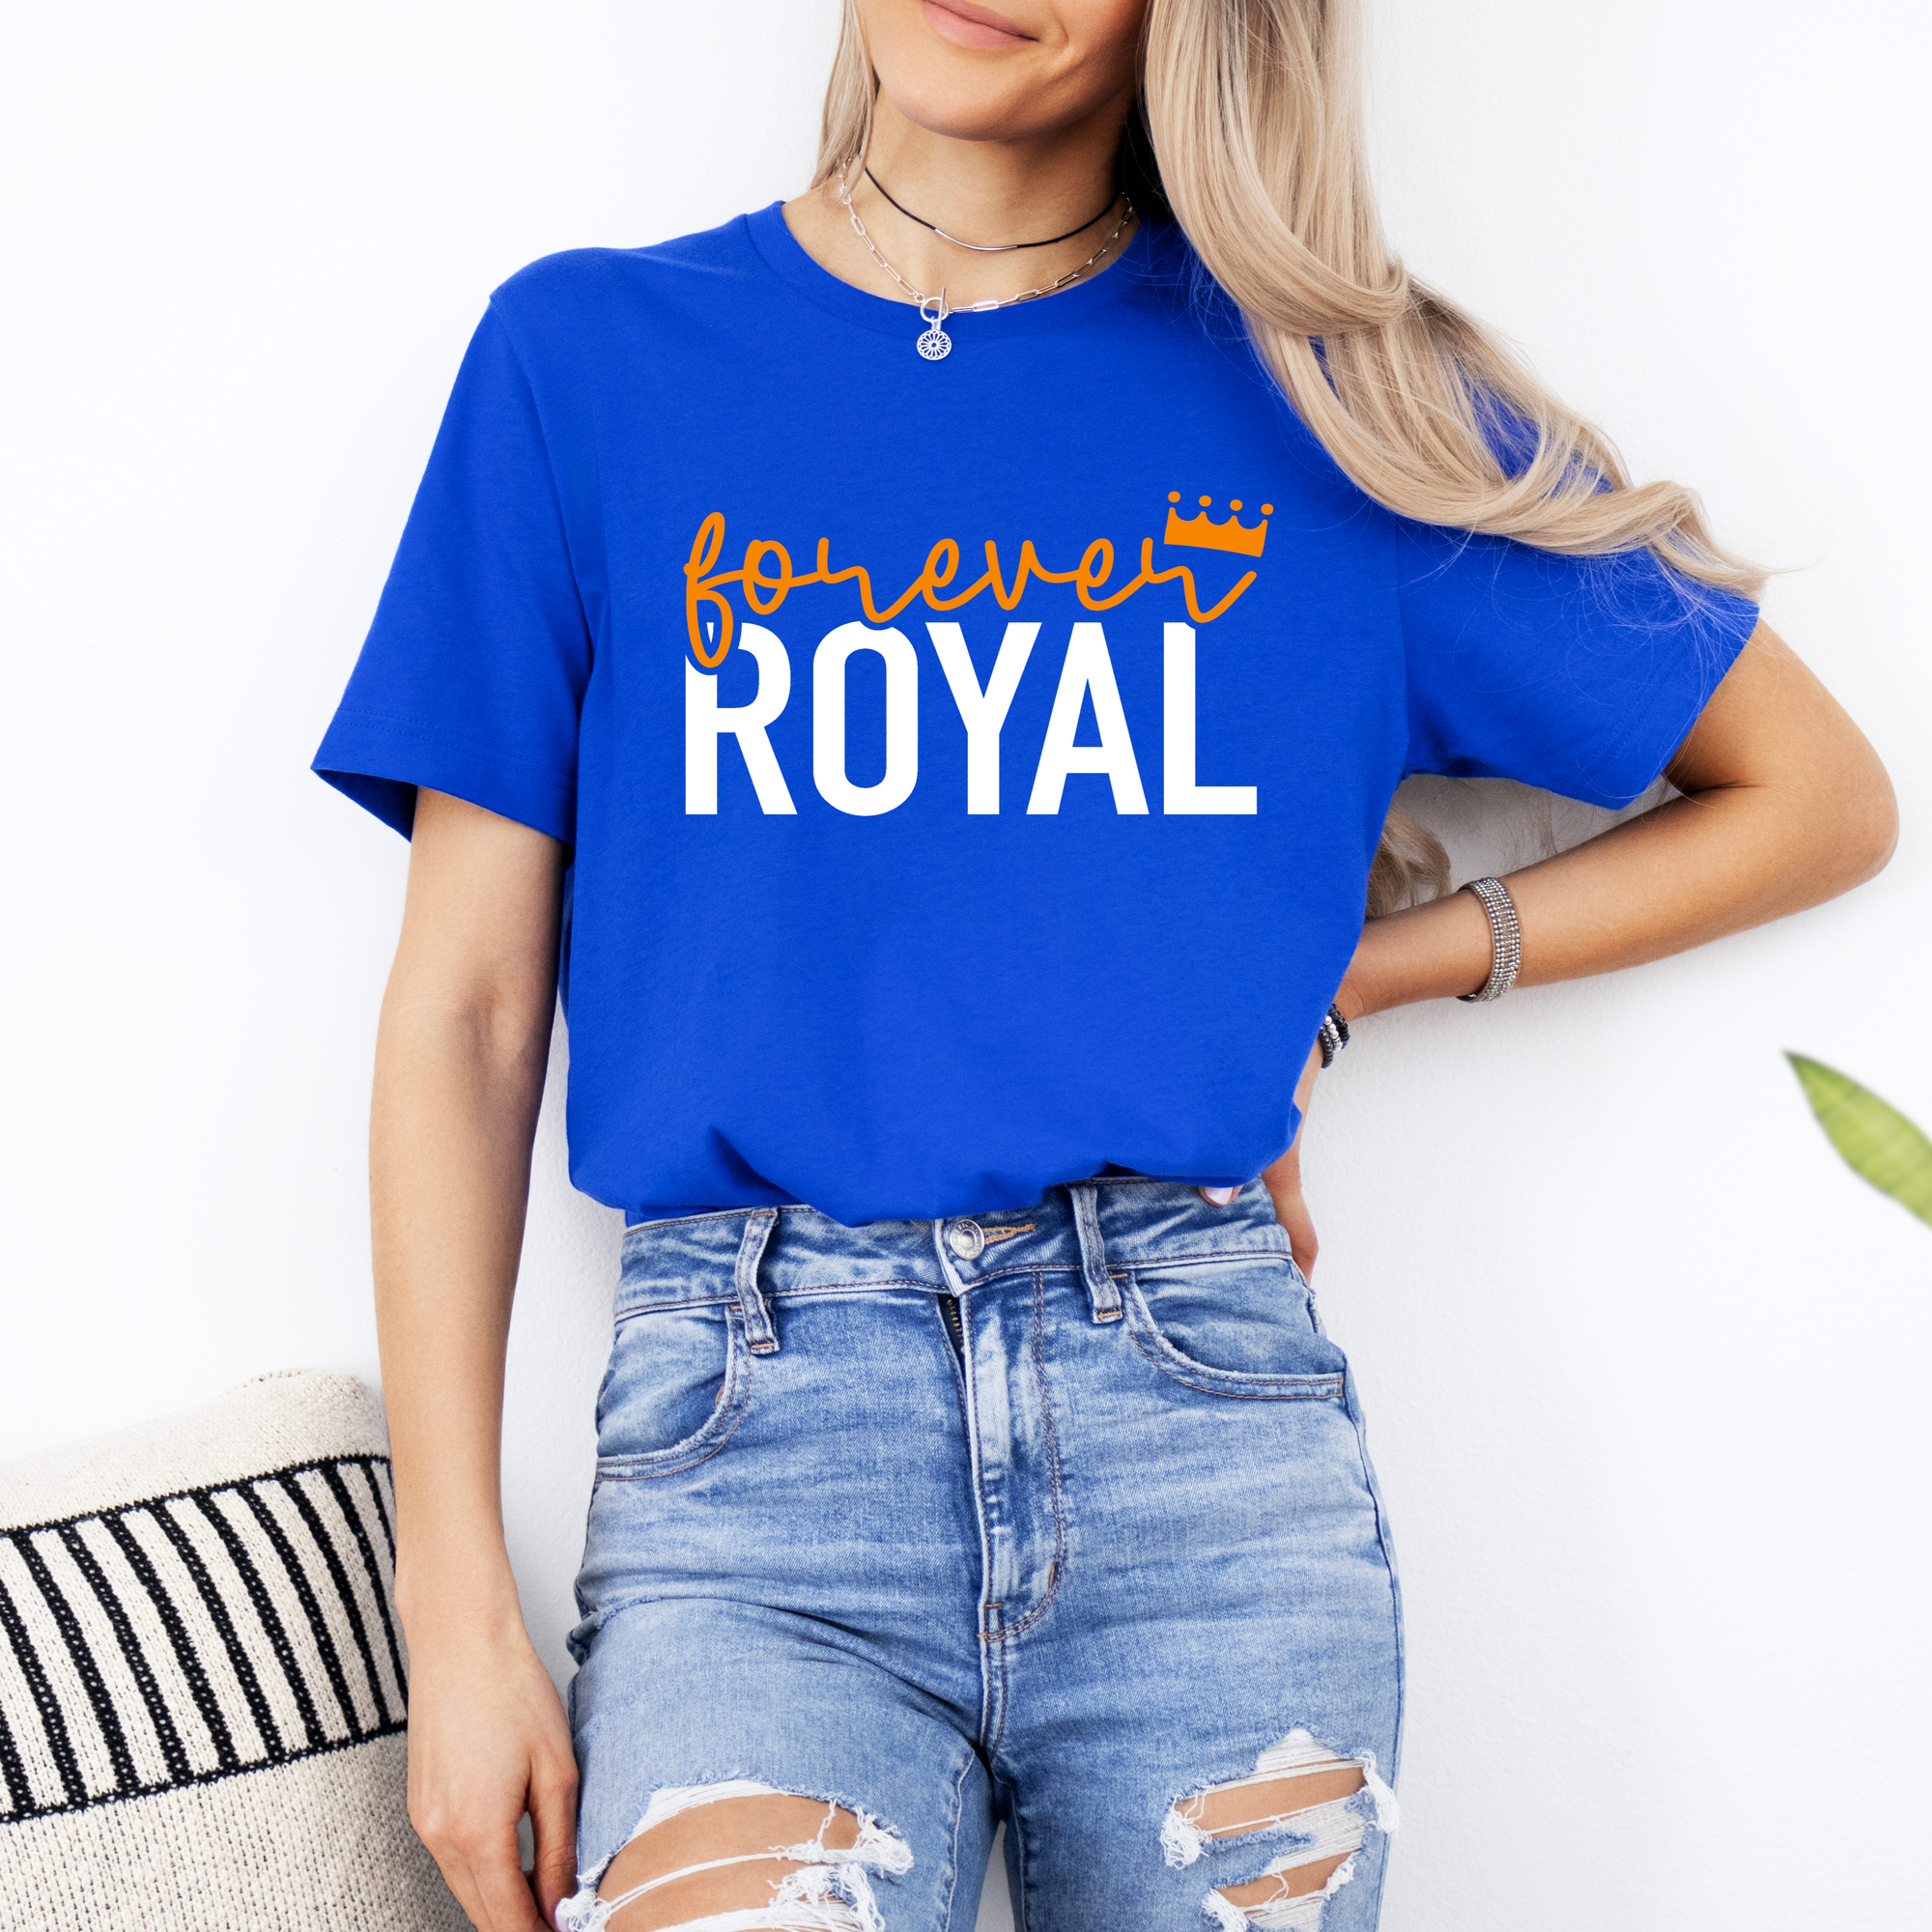 Forever Royal Tee OR Sweatshirt